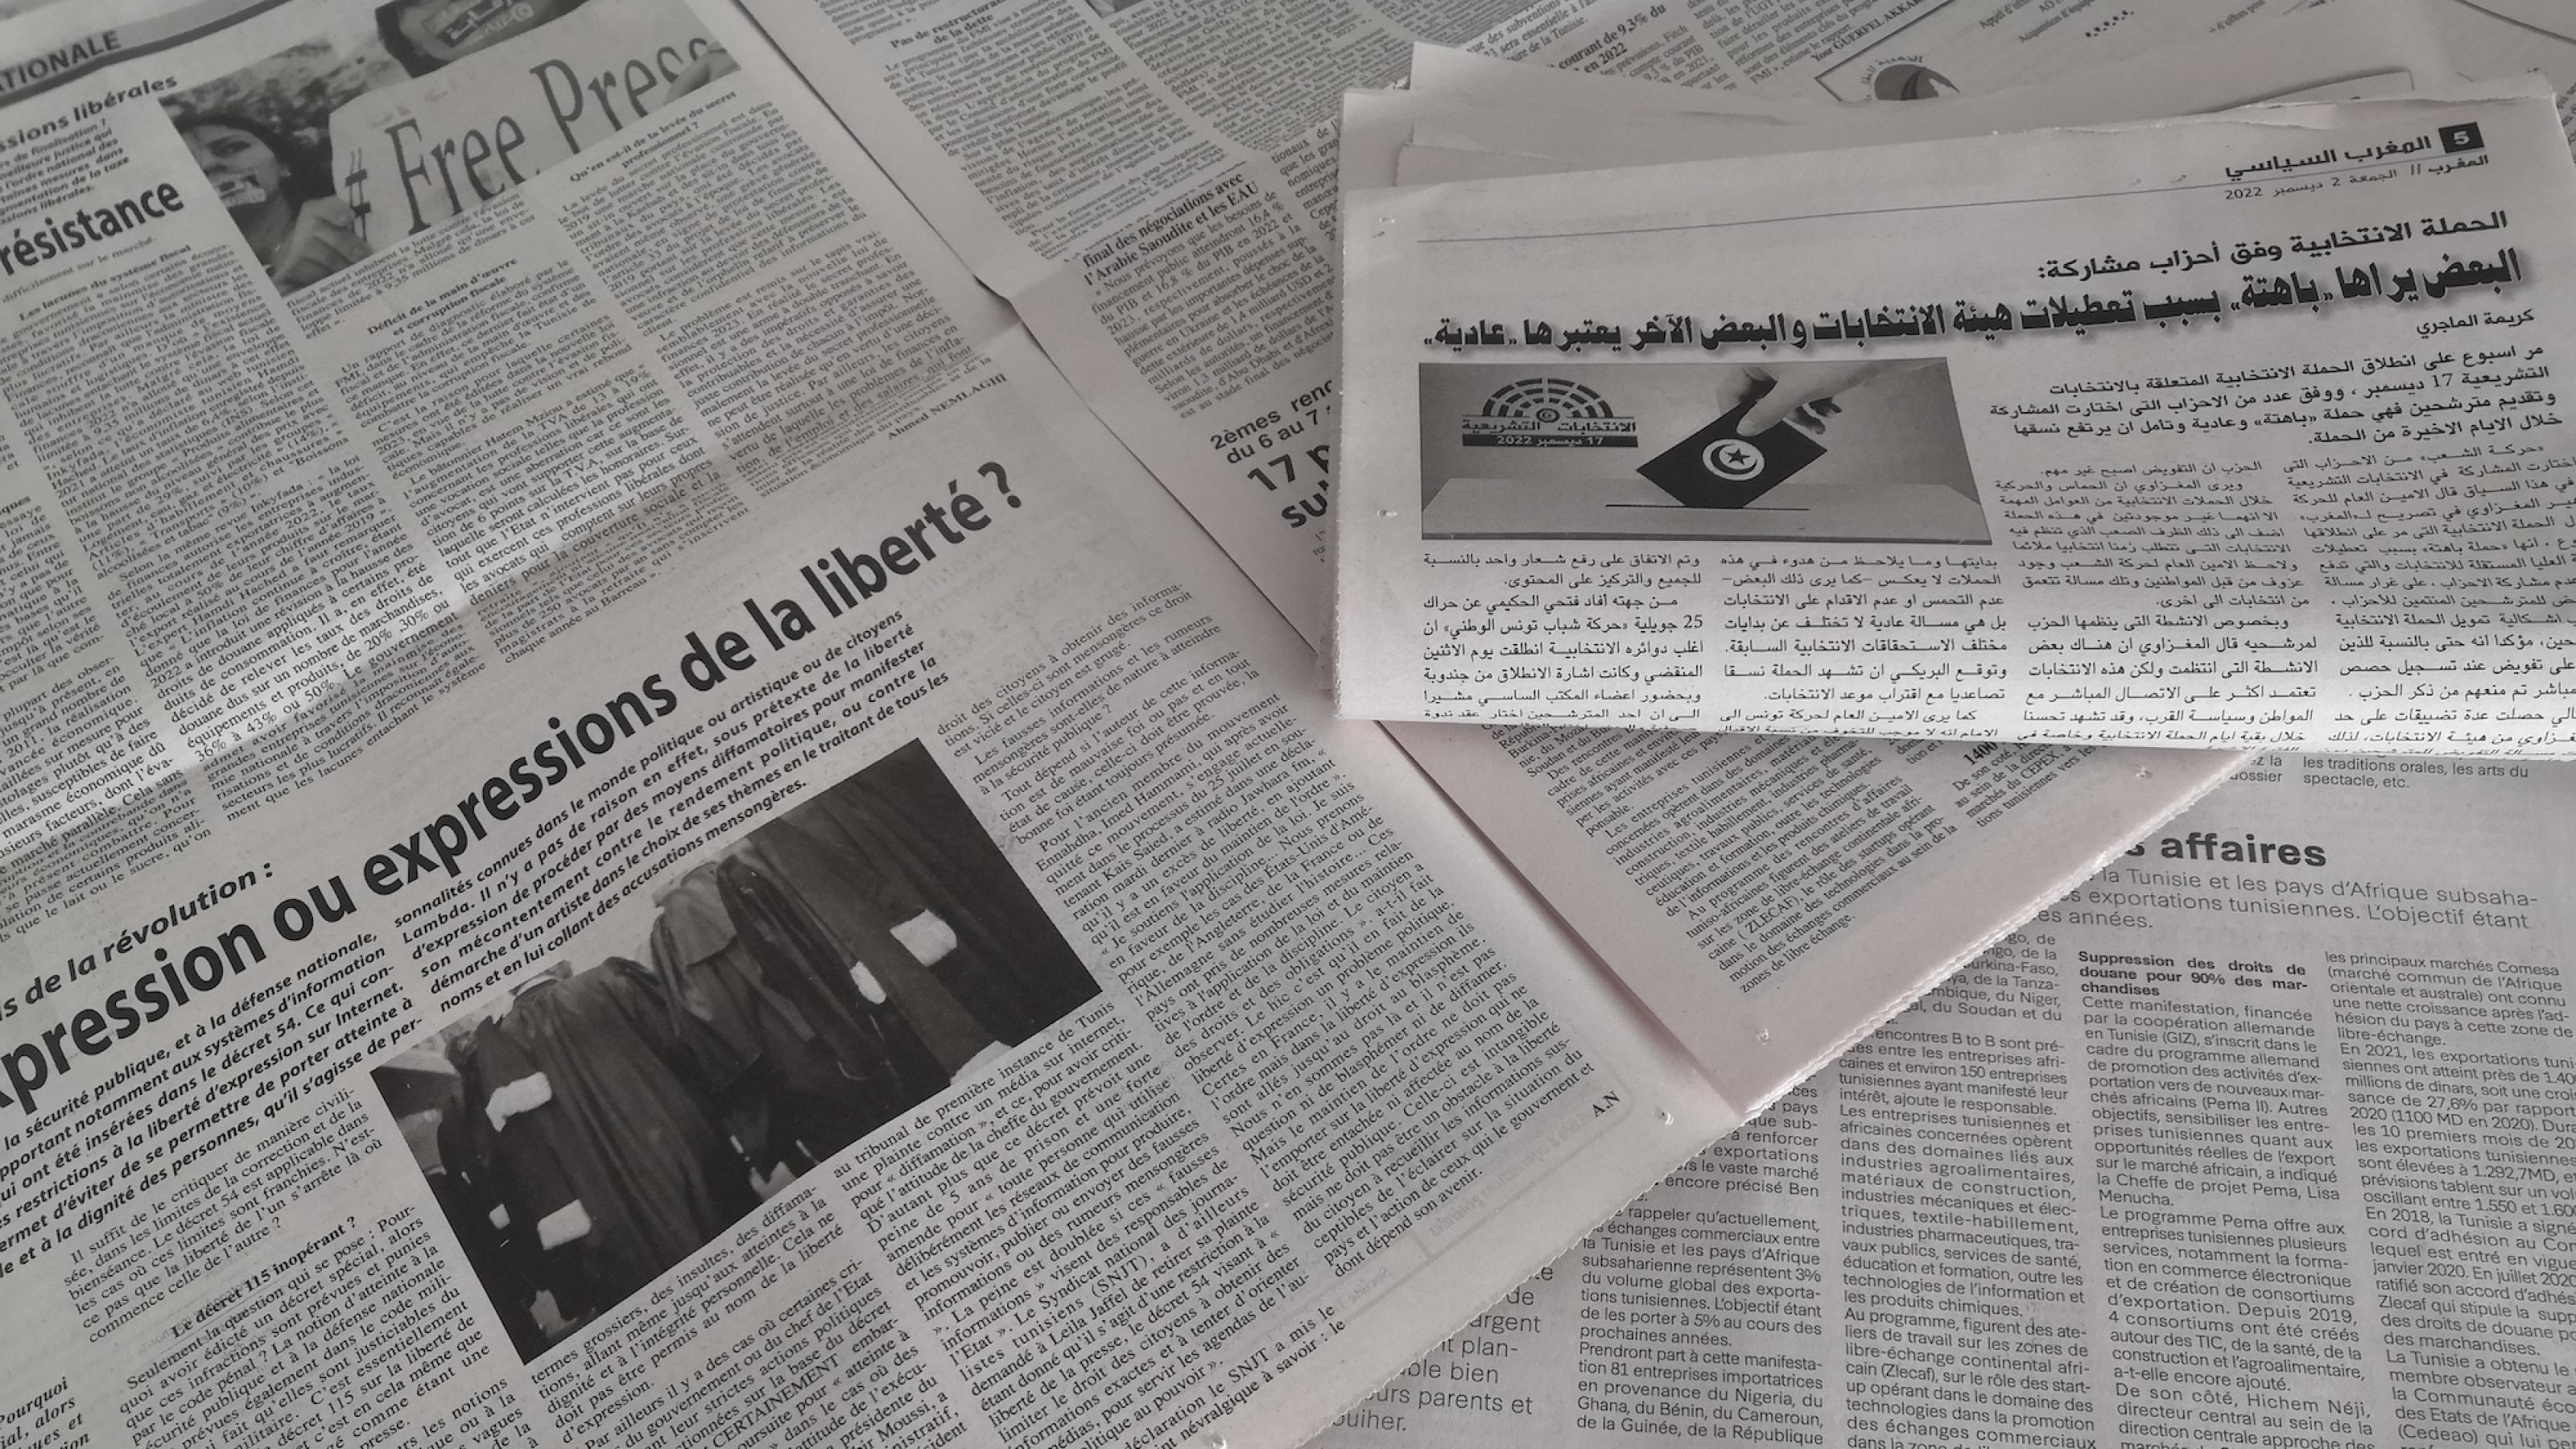 Mehrere französisch- und arabischsprachige Zeitungen mit großen Artikeln zu unter anderem der Meinungsfreiheit, aber nur zwei Artikeln am Rand zu den anstehenden Parlamentswahlen